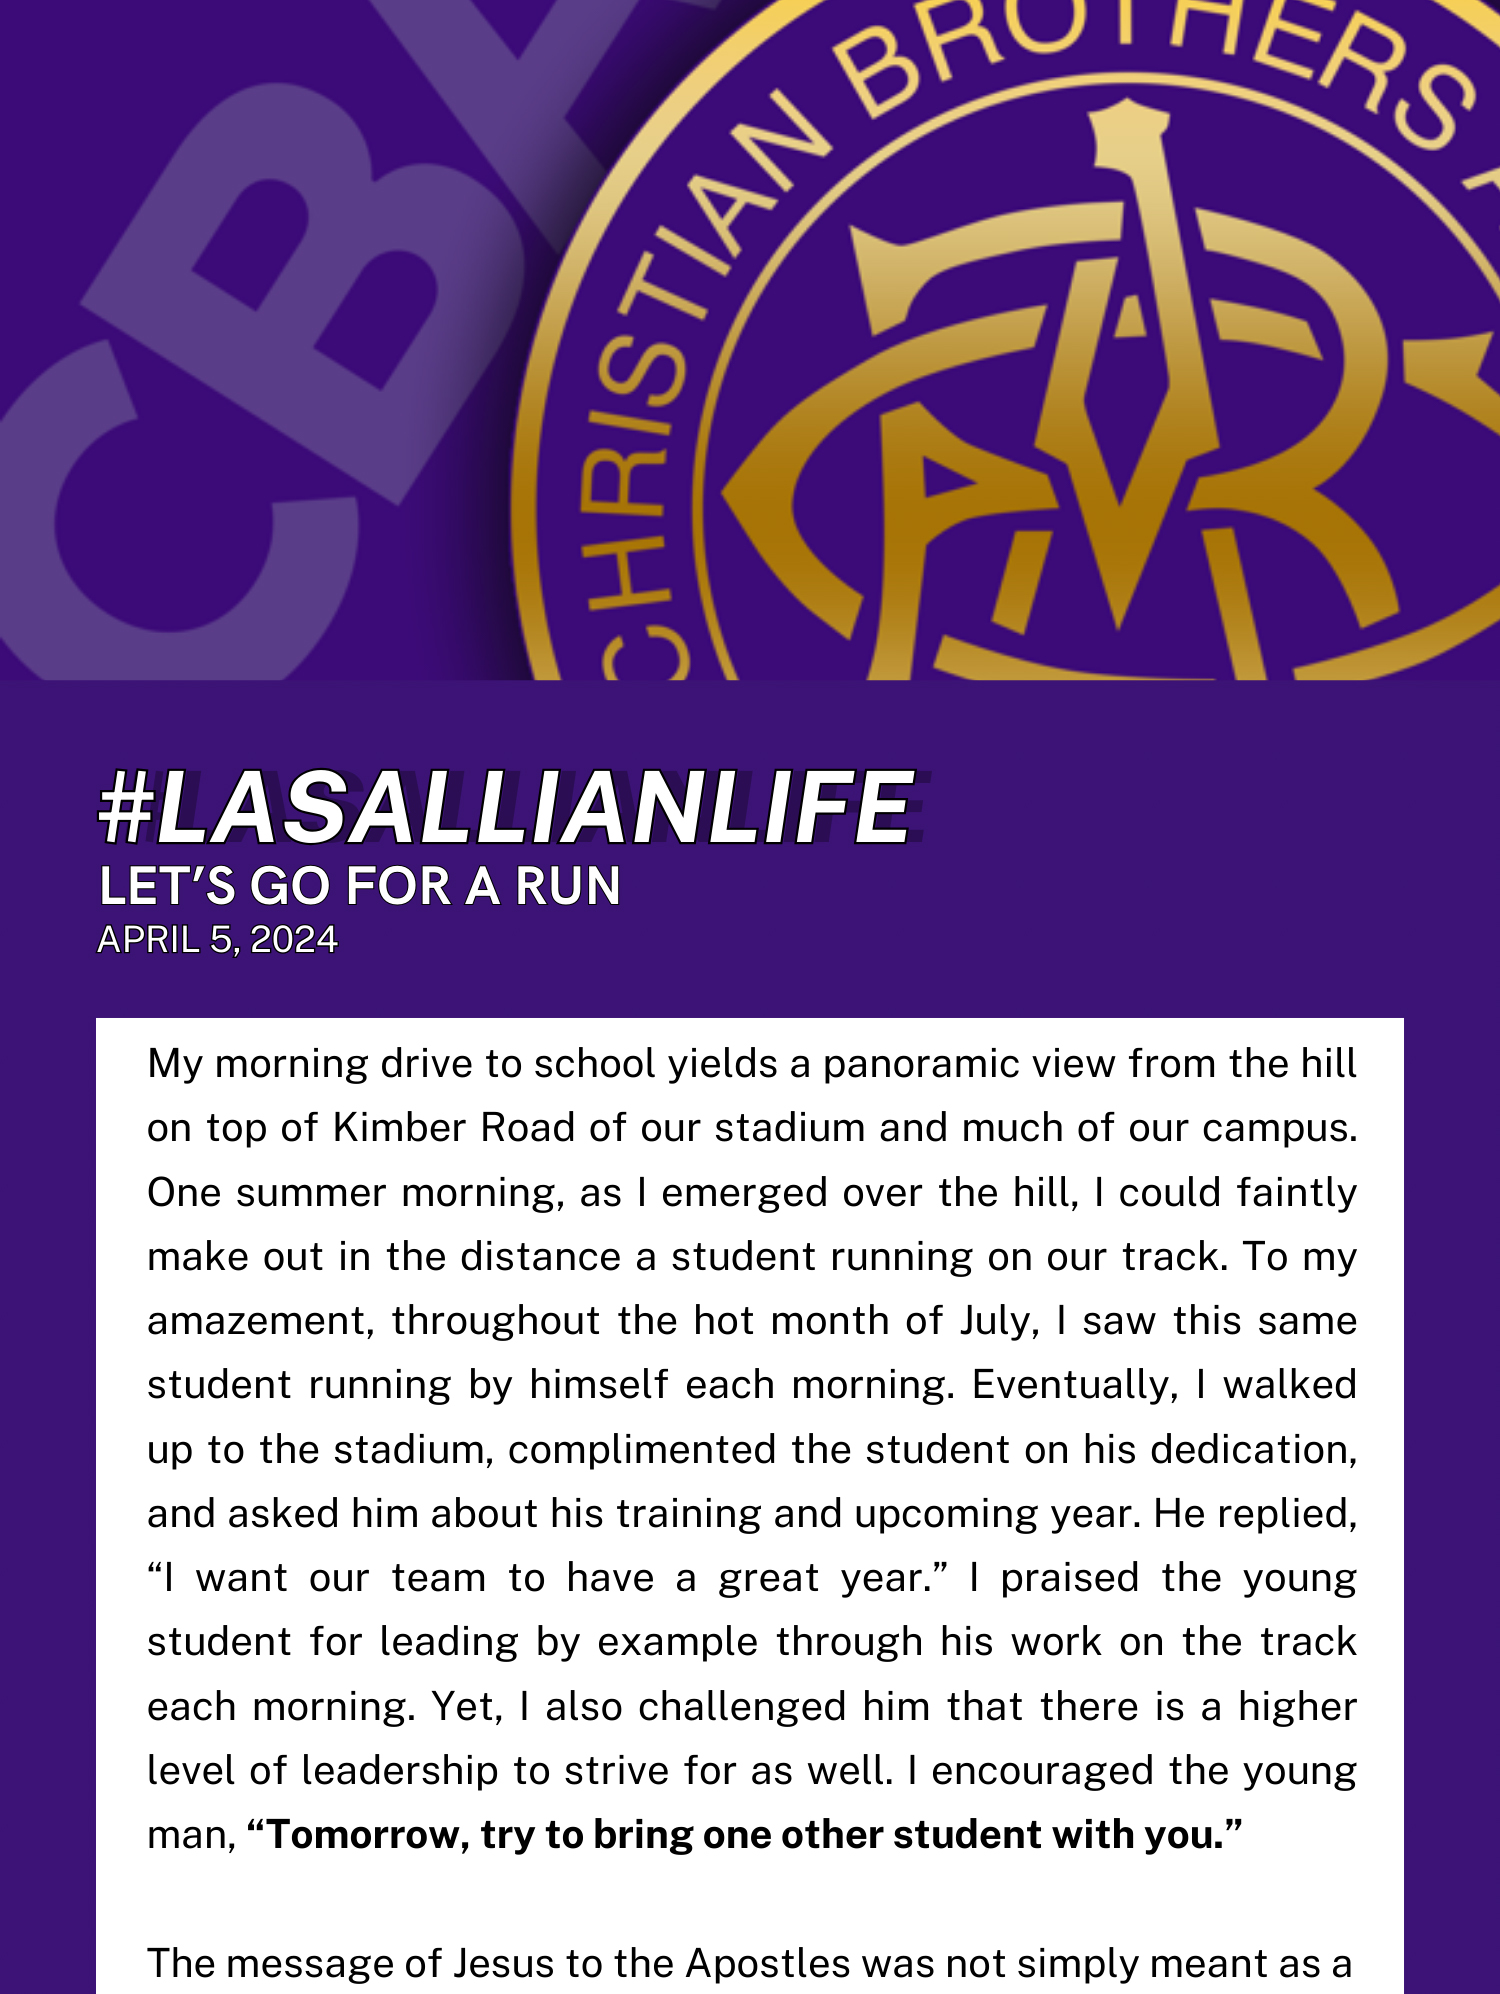 #LasallianLife :Let’s Go For a Run